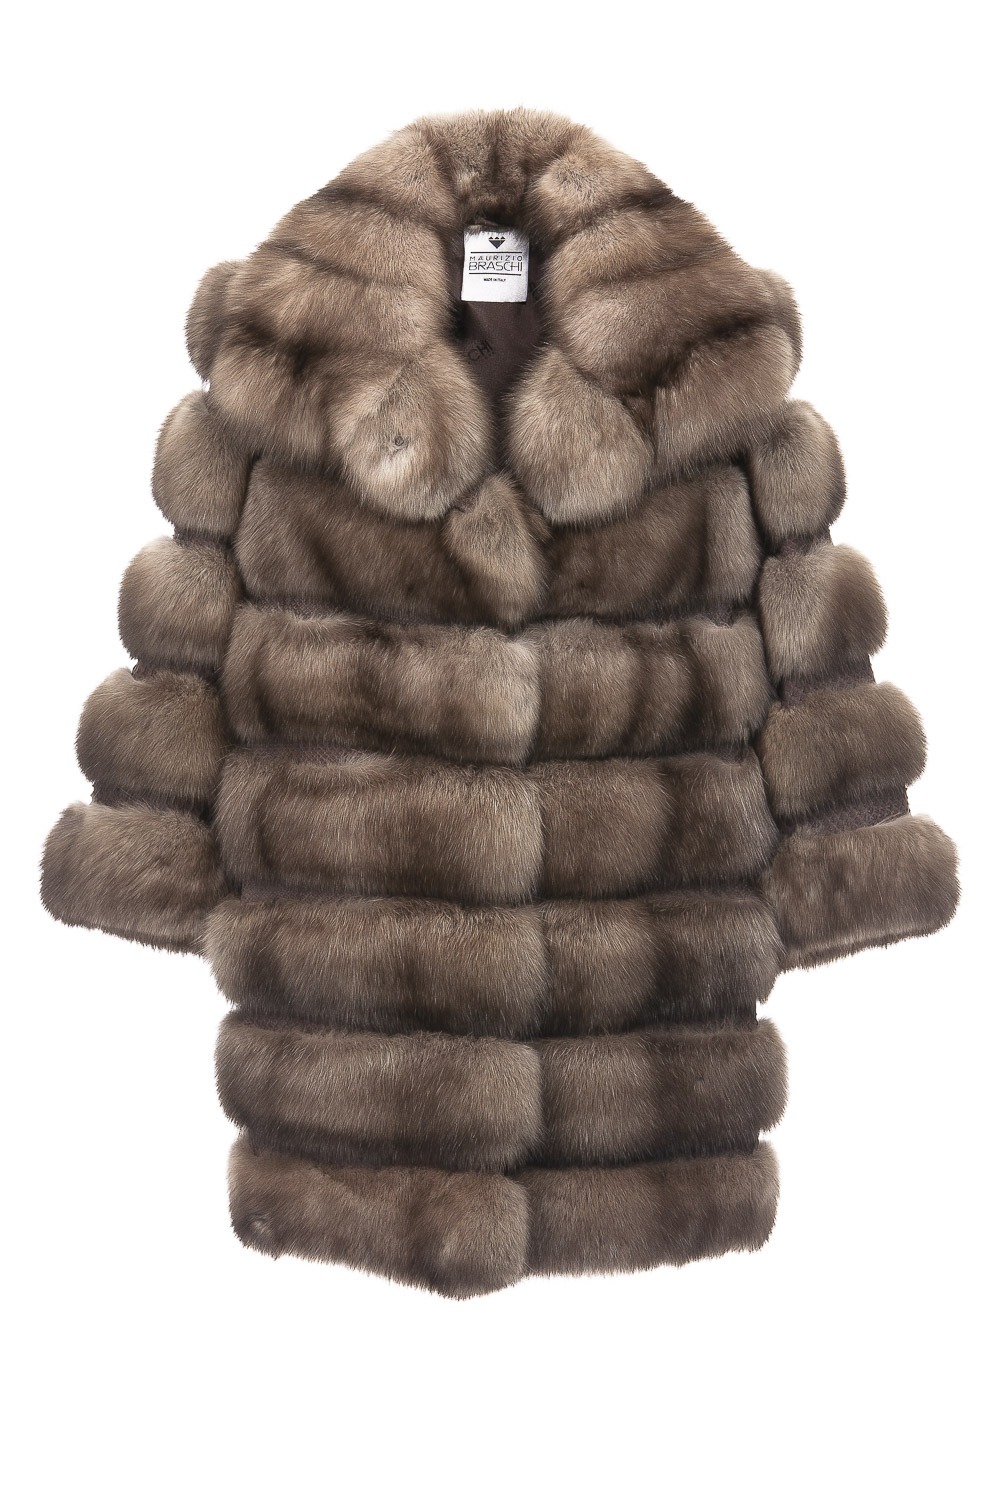 Sable Fur Coats